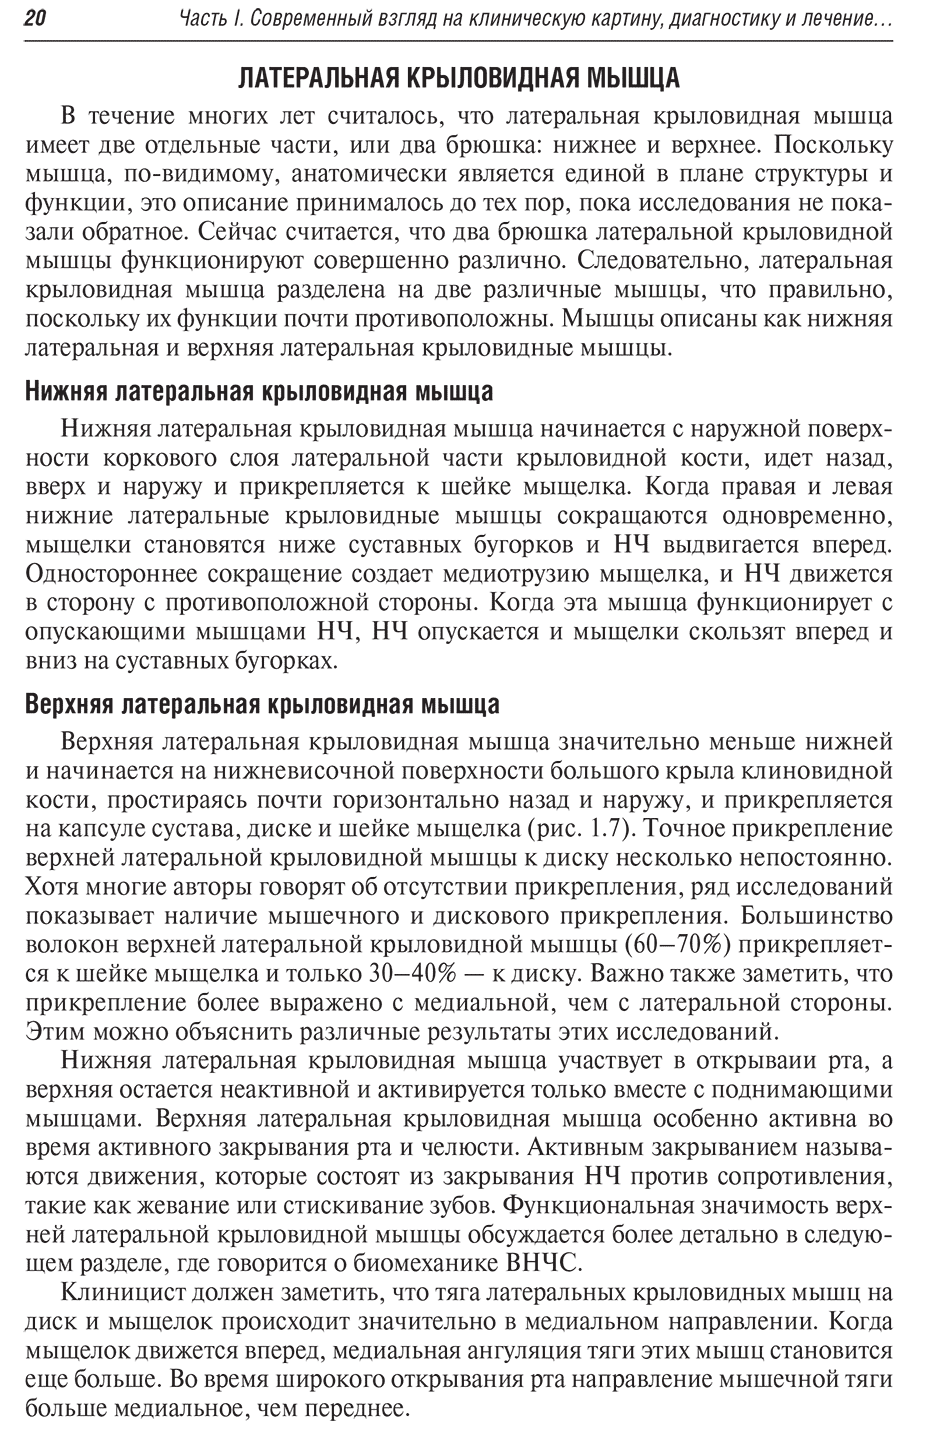 Пример страницы из книги "Заболевания височно-нижнечелюстного сустава" - Дробышев А. Ю.